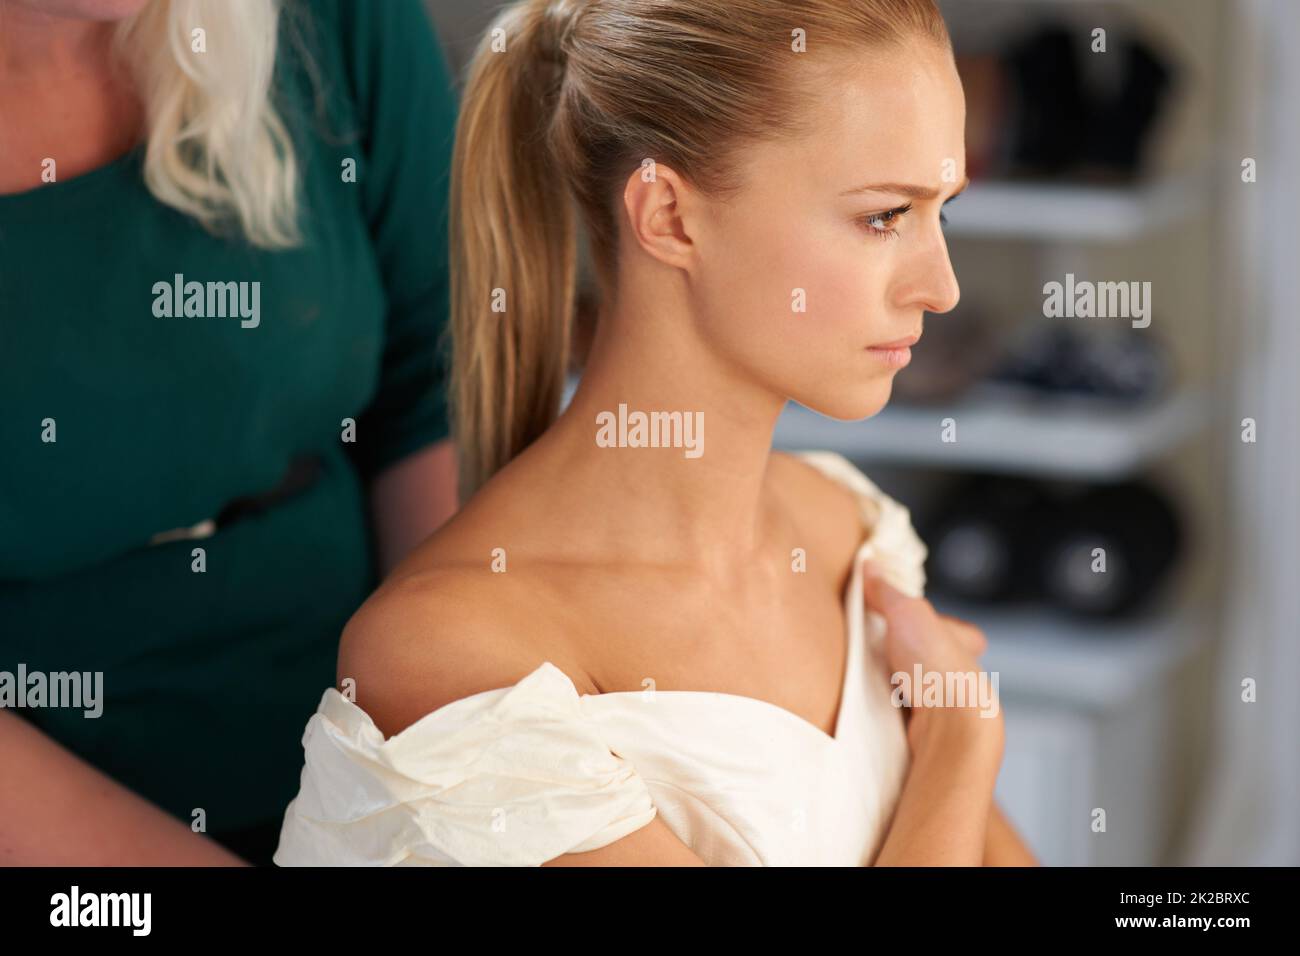 Vorbereitung auf den großen Tag. Eine junge Braut, die ihre Haare vor der Hochzeit gemacht hat. Stockfoto